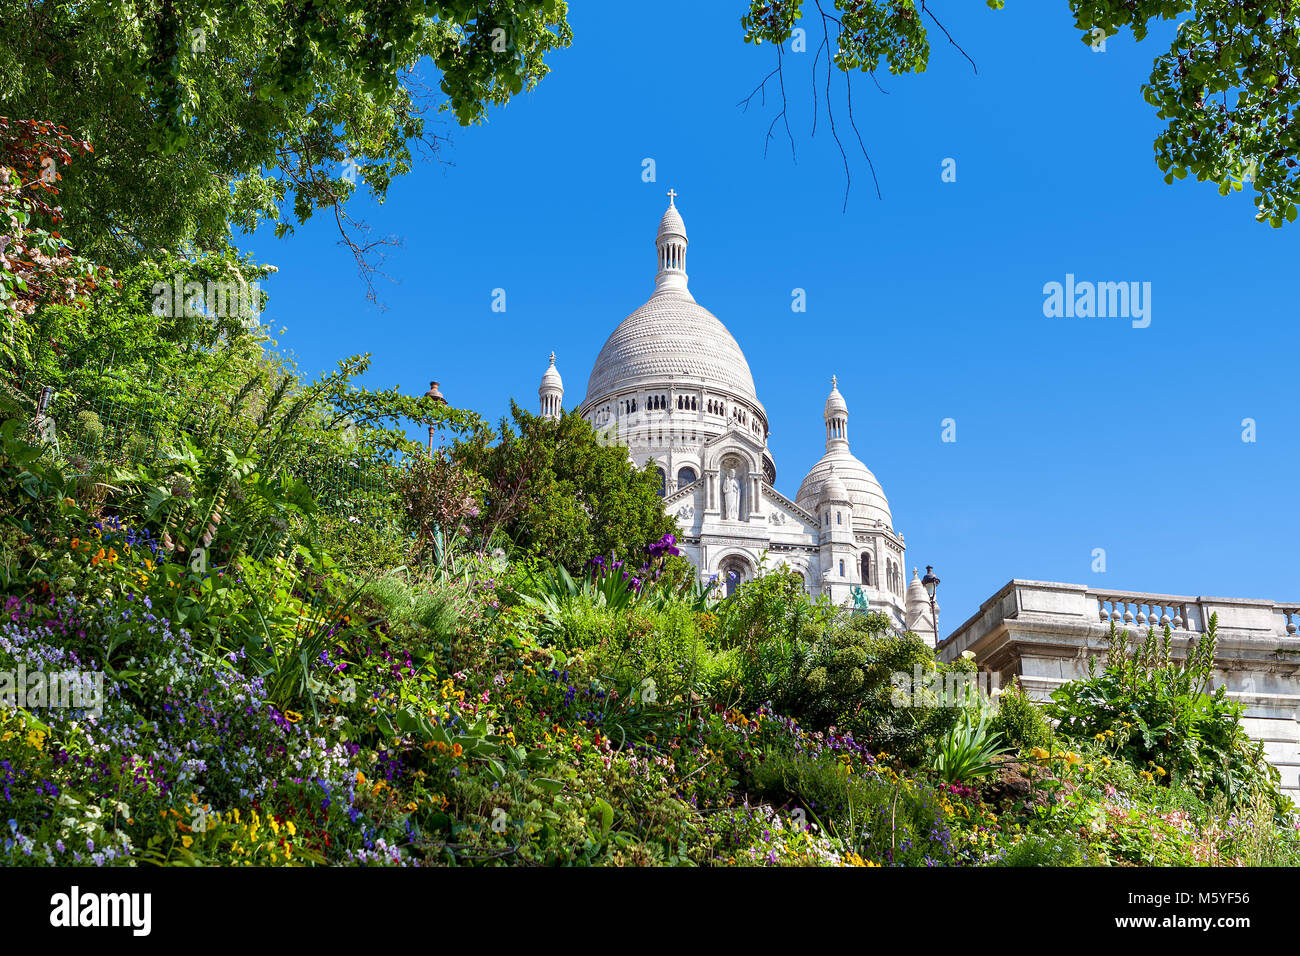 Grüne Beet mit Blumen wie die berühmten sacre-coeur Basilika am Hintergrund unter blauem Himmel in Paris, Frankreich. Stockfoto